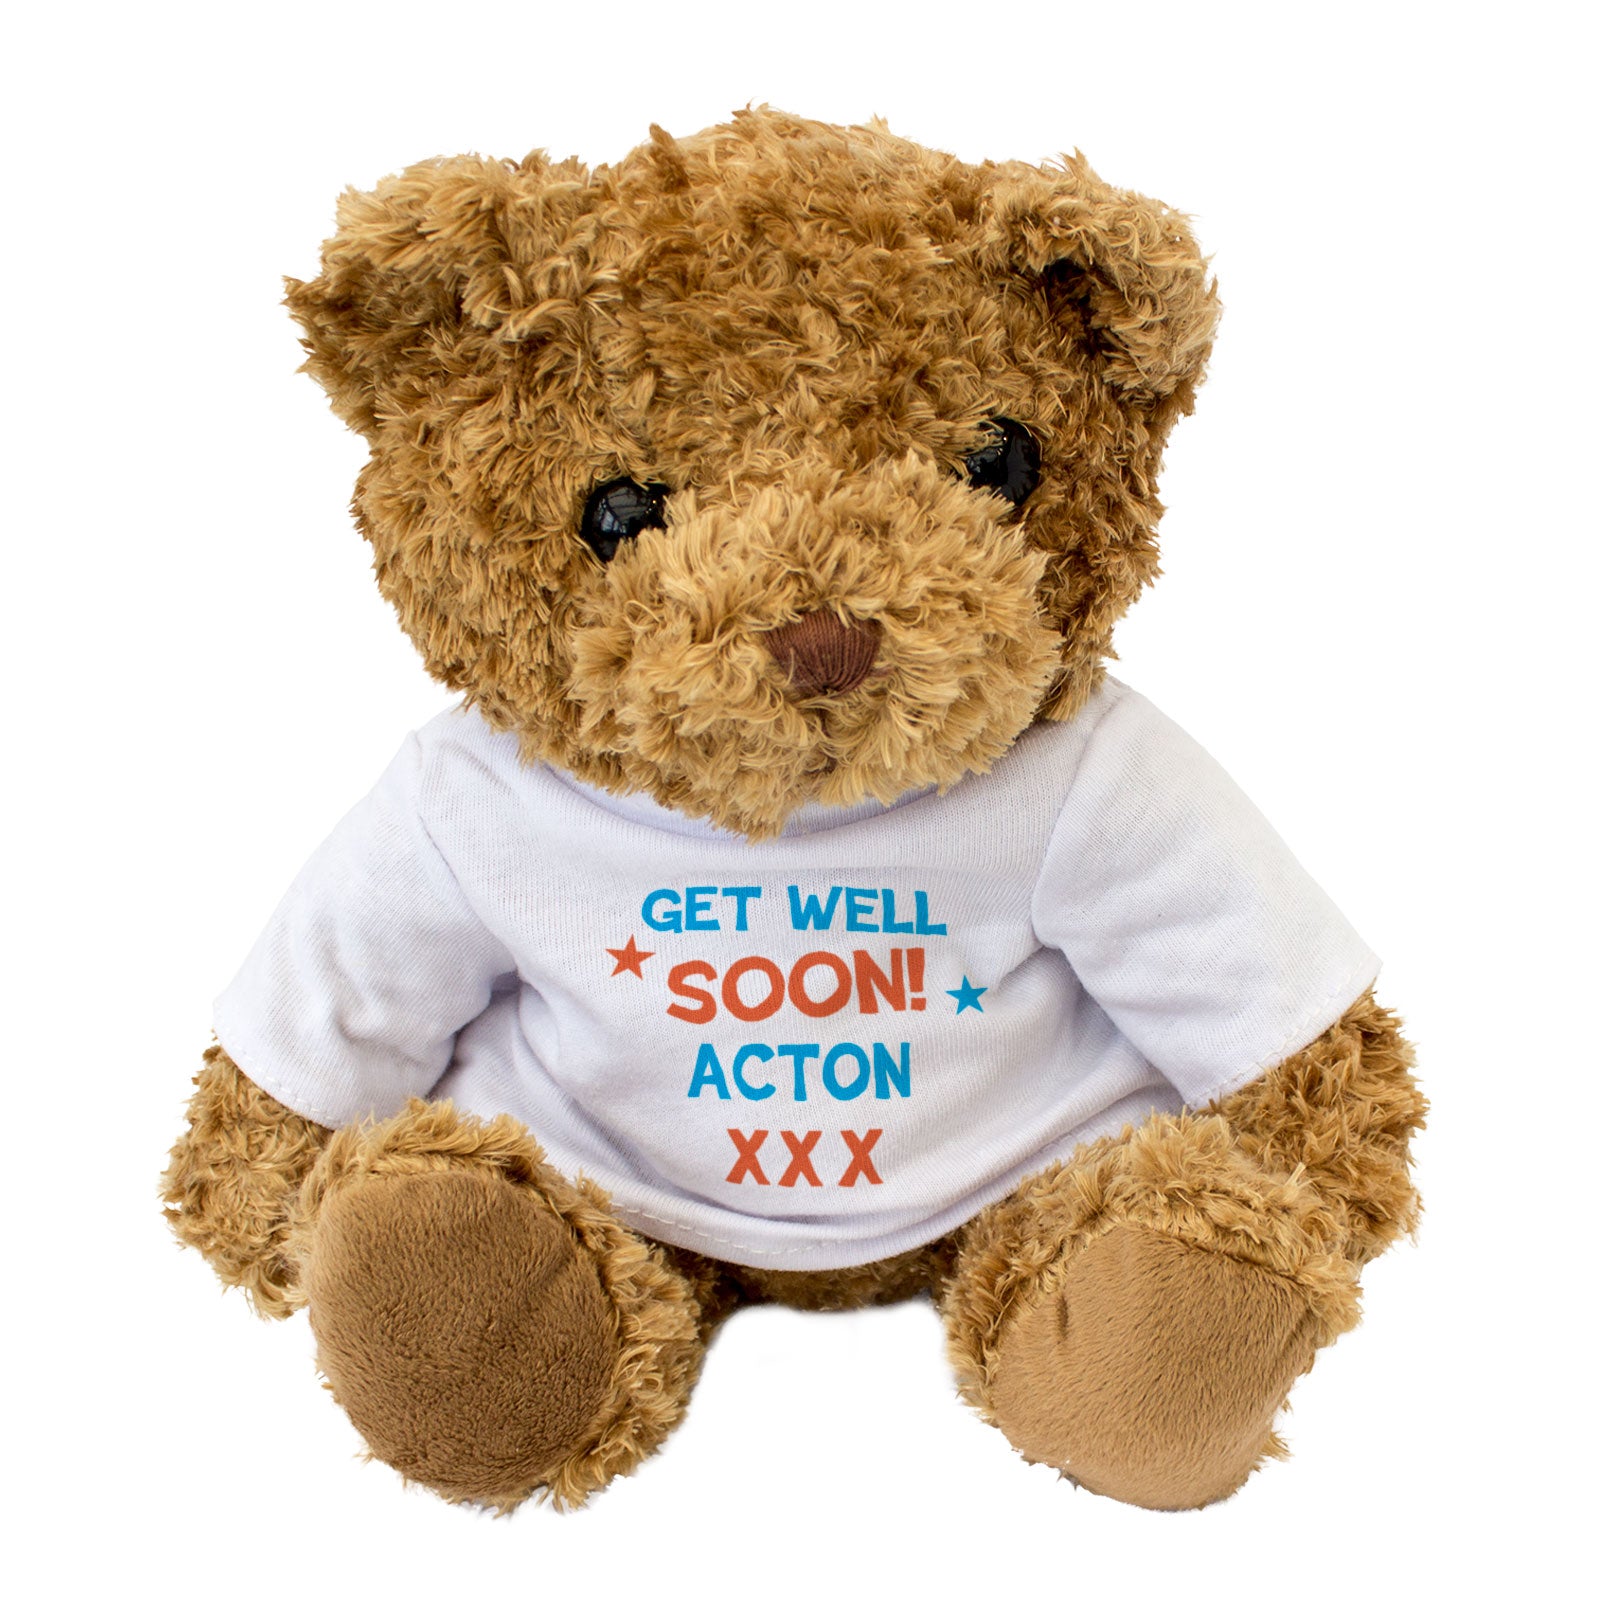 Get Well Soon Acton - Teddy Bear